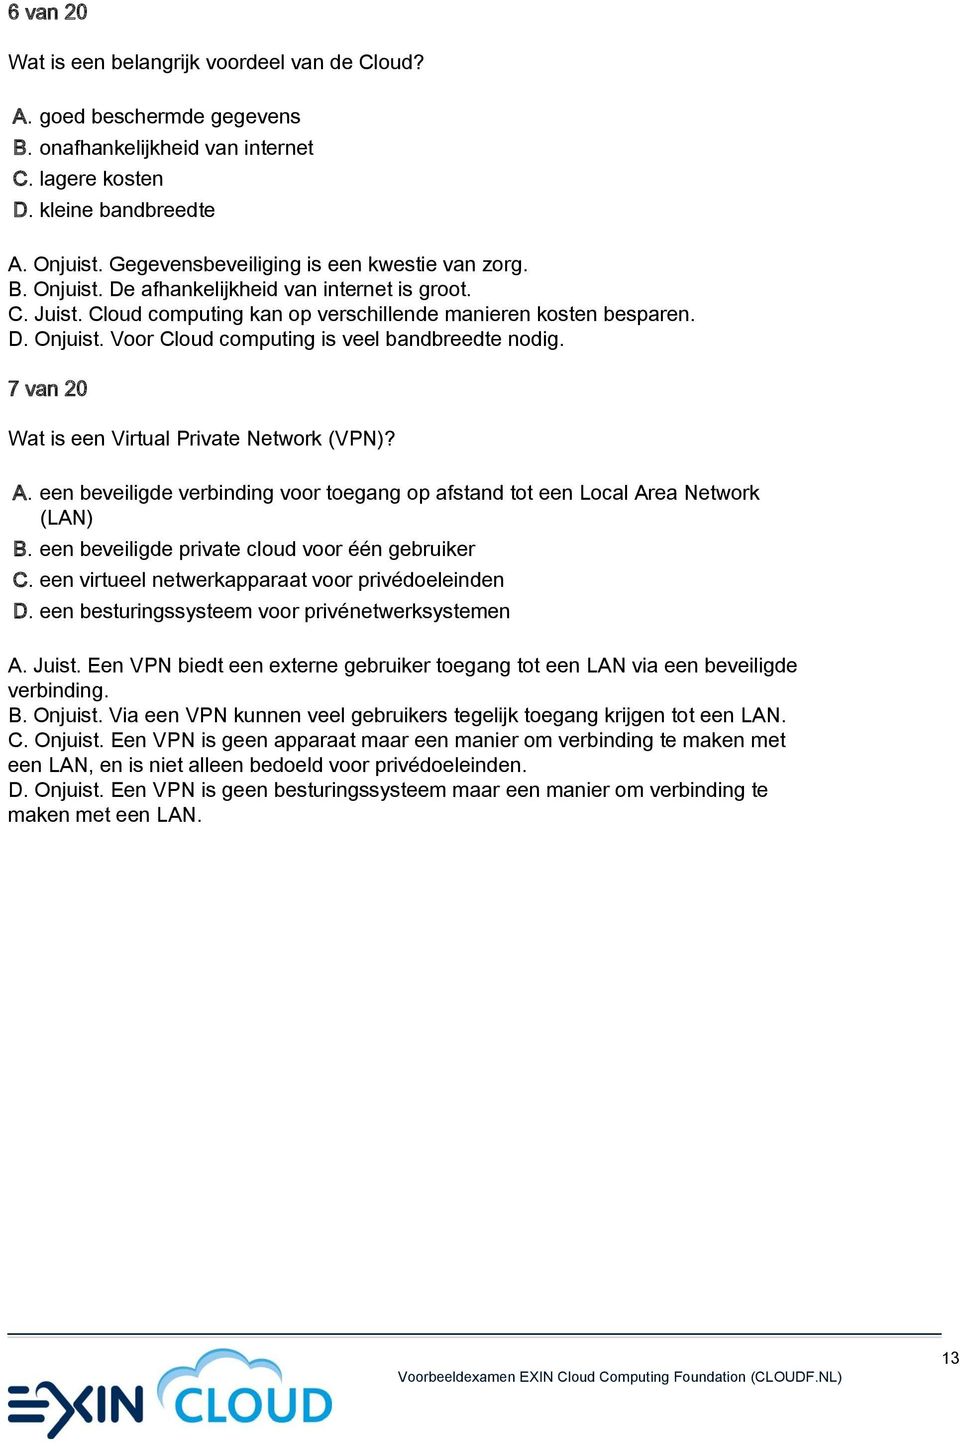 7 van 20 Wat is een Virtual Private Network (VPN)? A. een beveiligde verbinding voor toegang op afstand tot een Local Area Network (LAN) B. een beveiligde private cloud voor één gebruiker C.